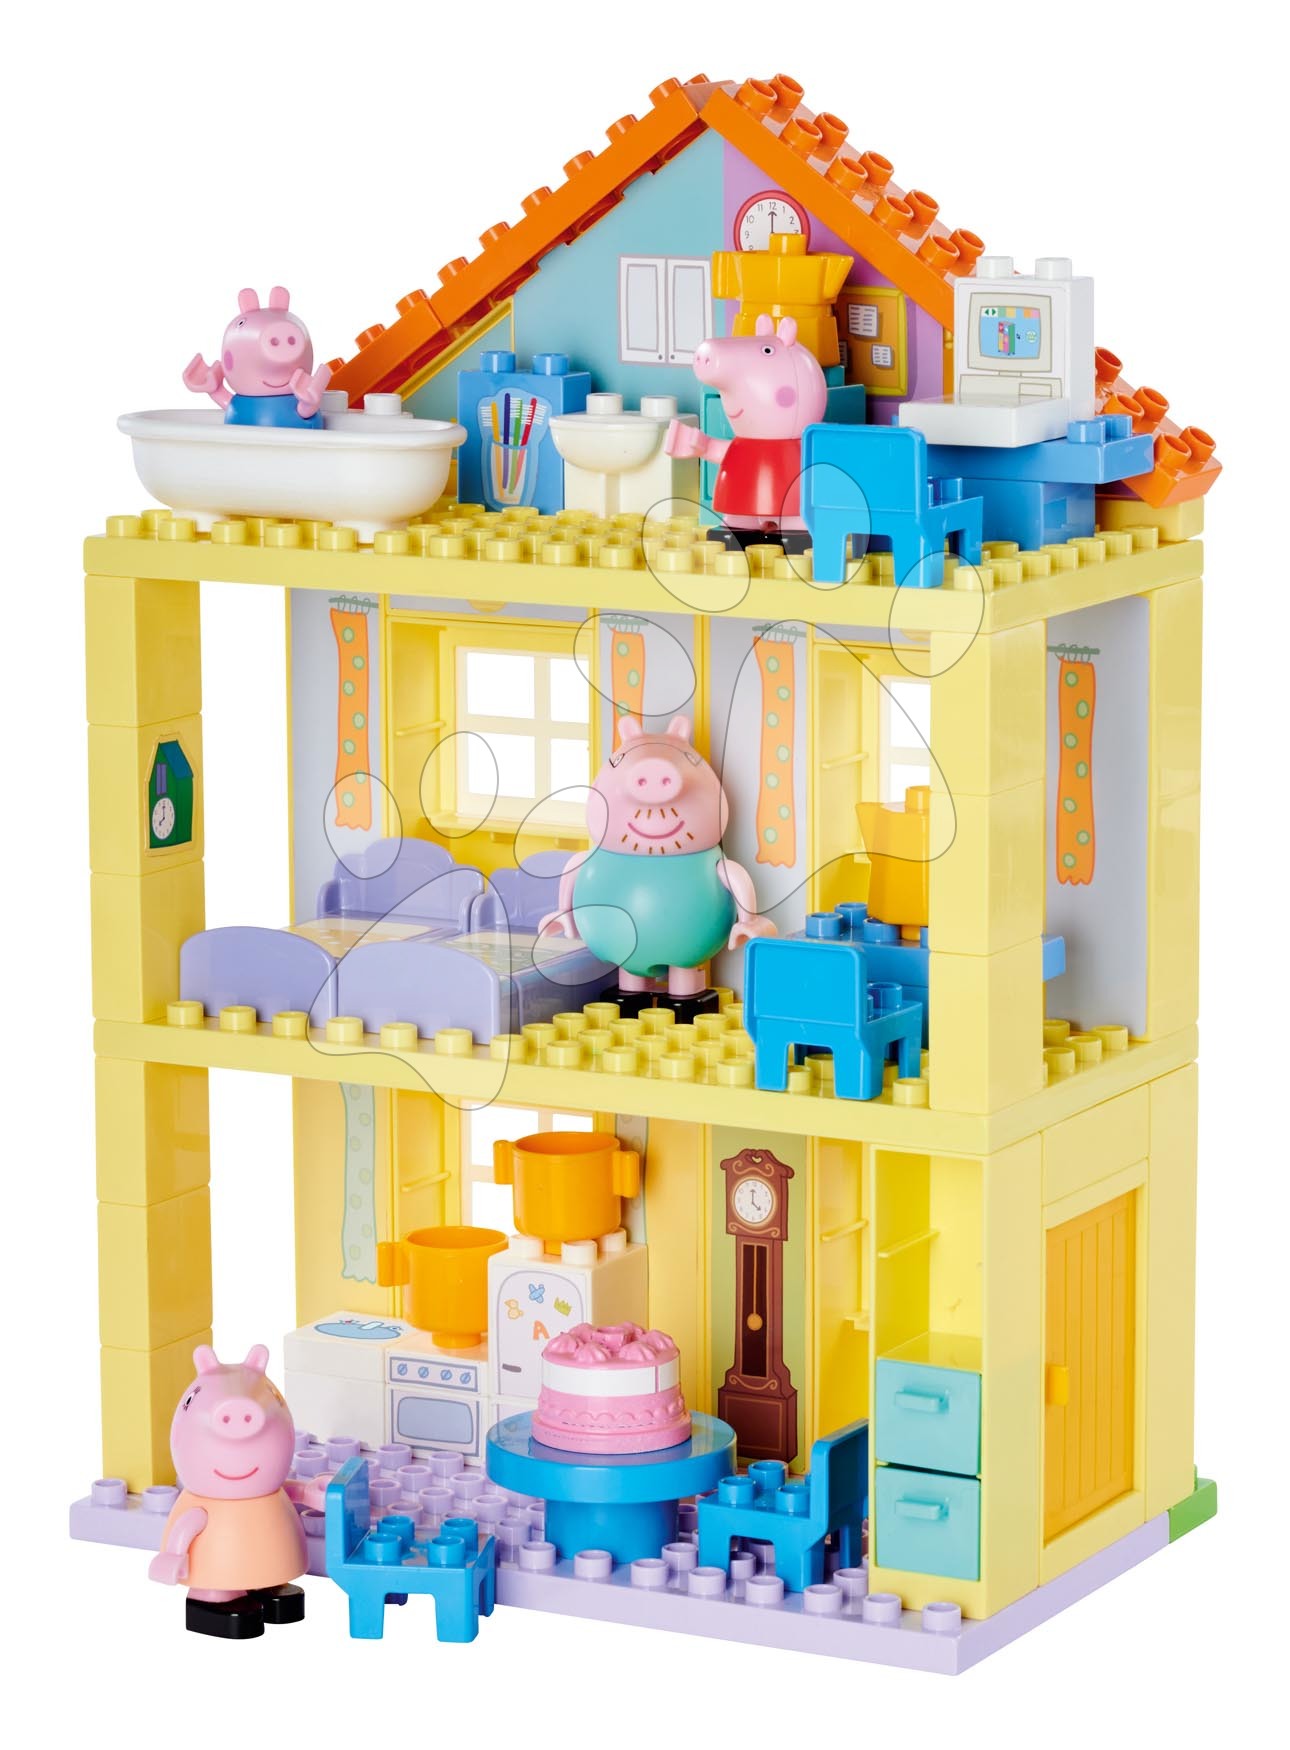 Stavebnice ako LEGO - Stavebnica Peppa Pig Family House PlayBig Bloxx BIG so 4 figúrkami a 3 poschodiami 86 dielov od od 1,5-5 rokov